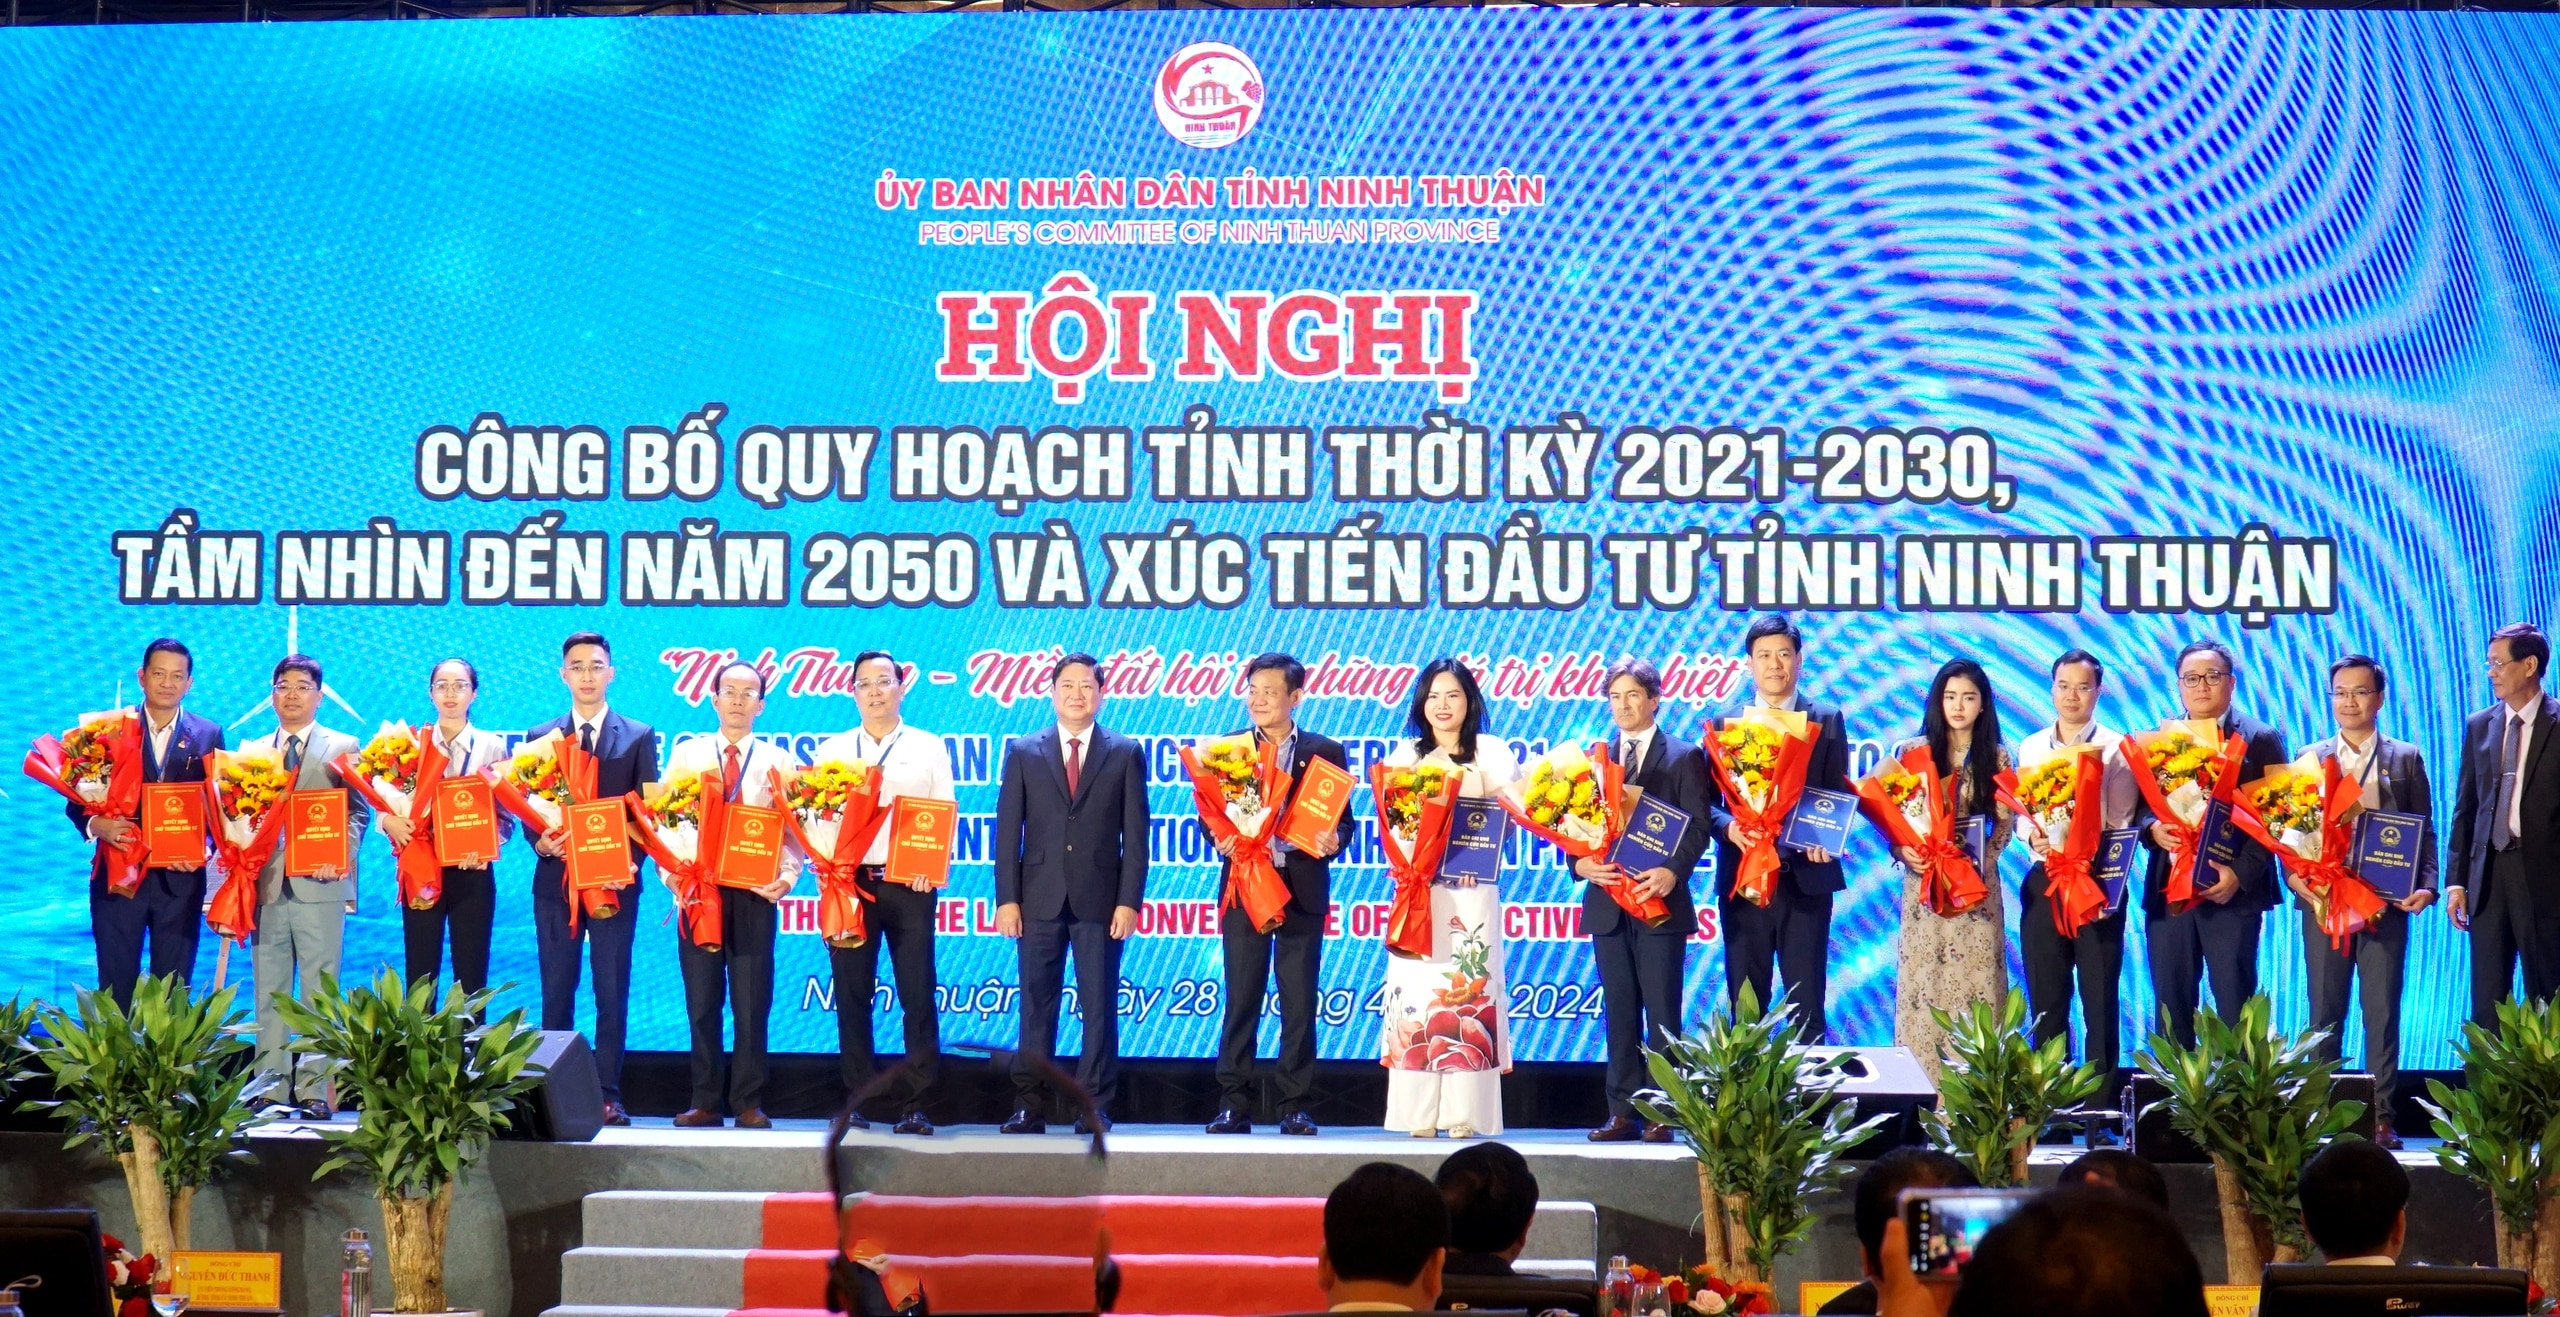 Tại hội nghị, UBND tỉnh Ninh Thuận đã trao 7 giấy chứng nhận đăng ký đầu tư và 7 bản ghi nhớ nghiên cứu phát triển dự án với tổng số vốn dự kiến đầu tư hơn 120.000 tỉ đồng cho 14 nhà đầu tư trong và ngoài nước